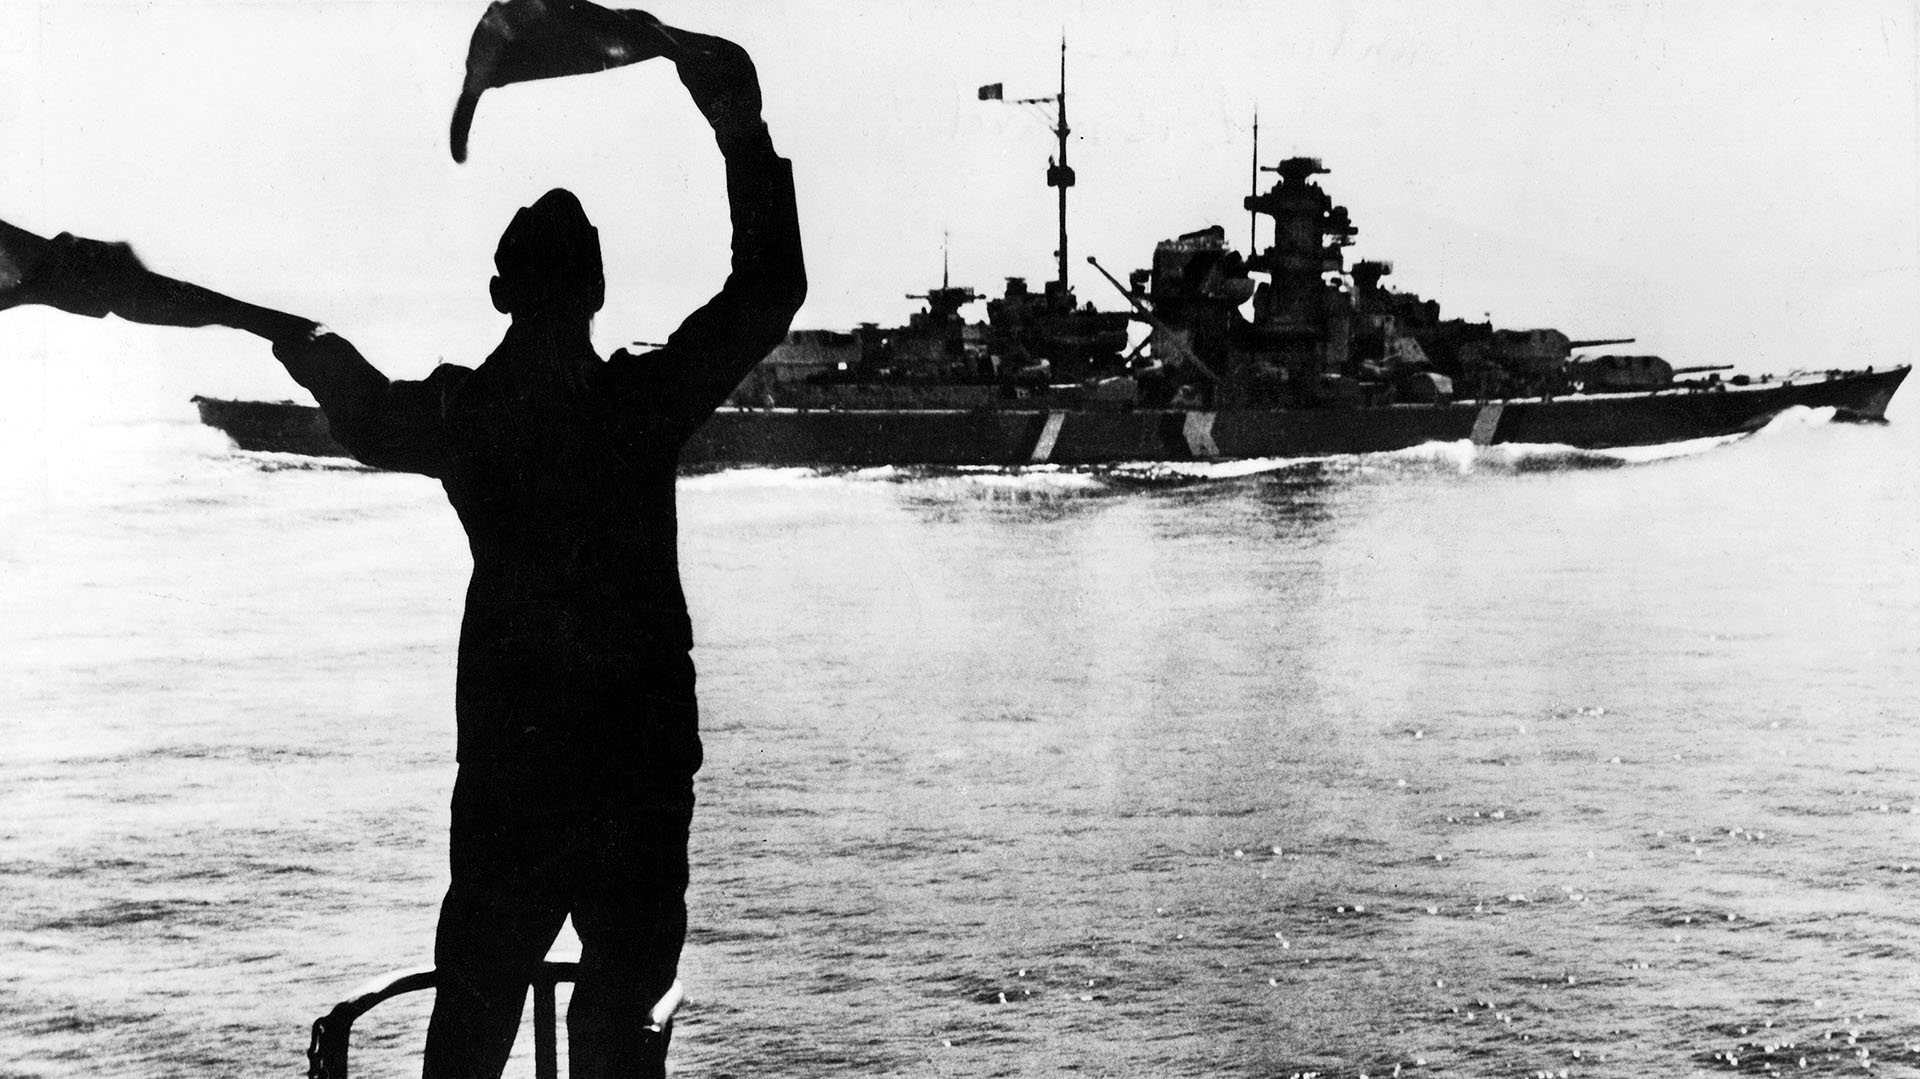 Primera y última salida del acorazado alemán Bismarck en el camino a Dinamarca y Noruega, que se hundió el 27 de mayo de 1941 al suroeste de Irlanda (Apic/Getty Images)
